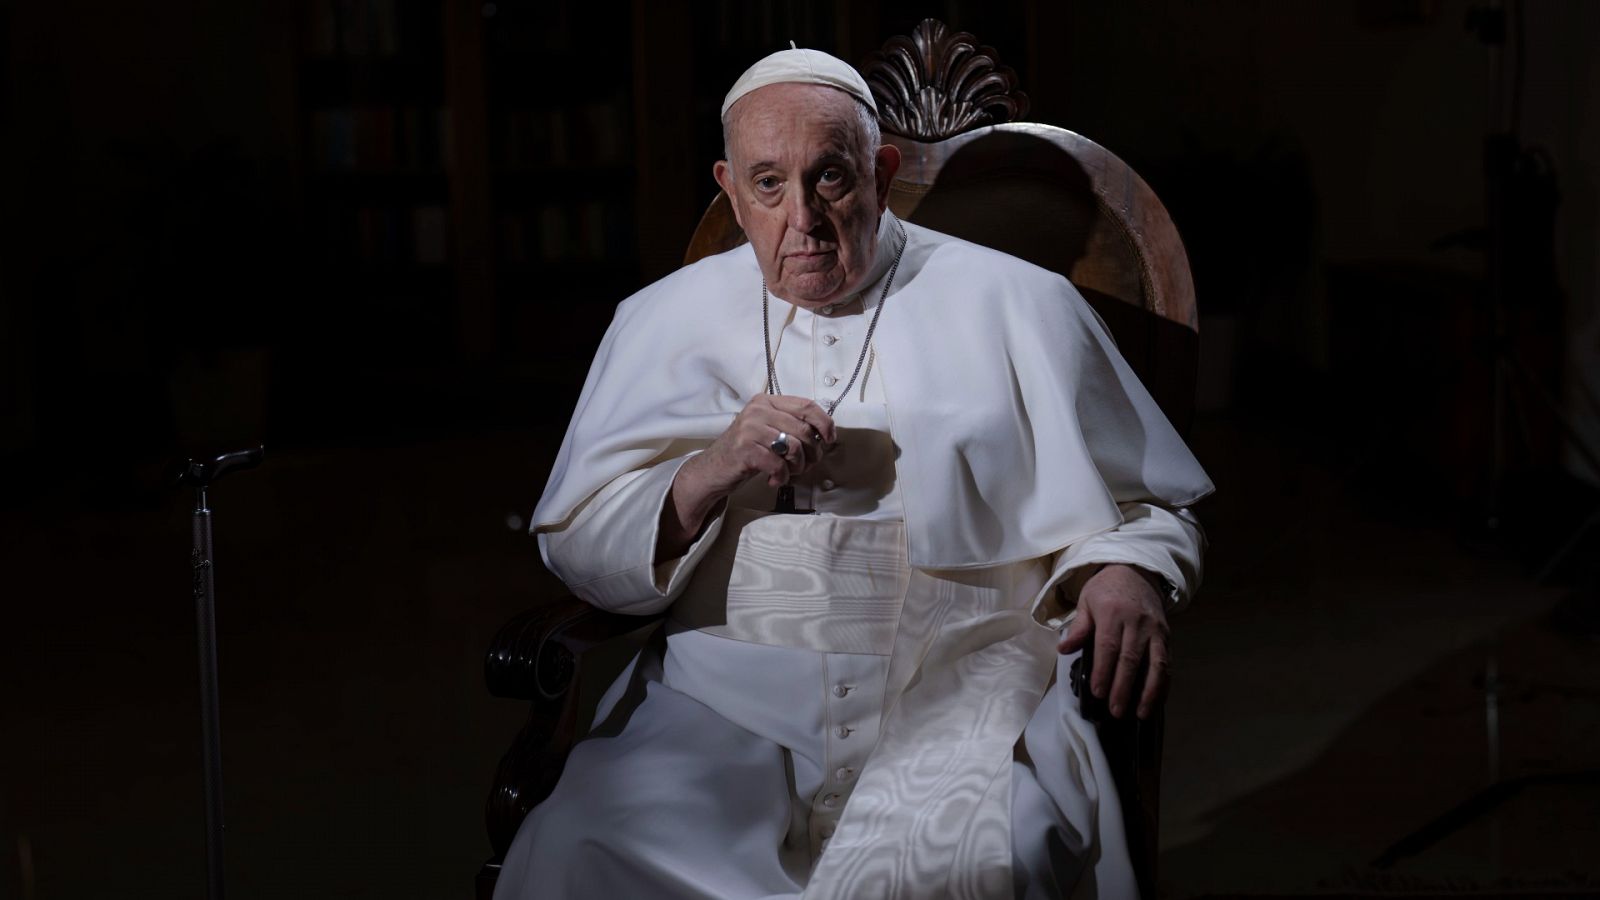 El papa se muestra partidario de abolir las leyes que penalizan la homosexualidad